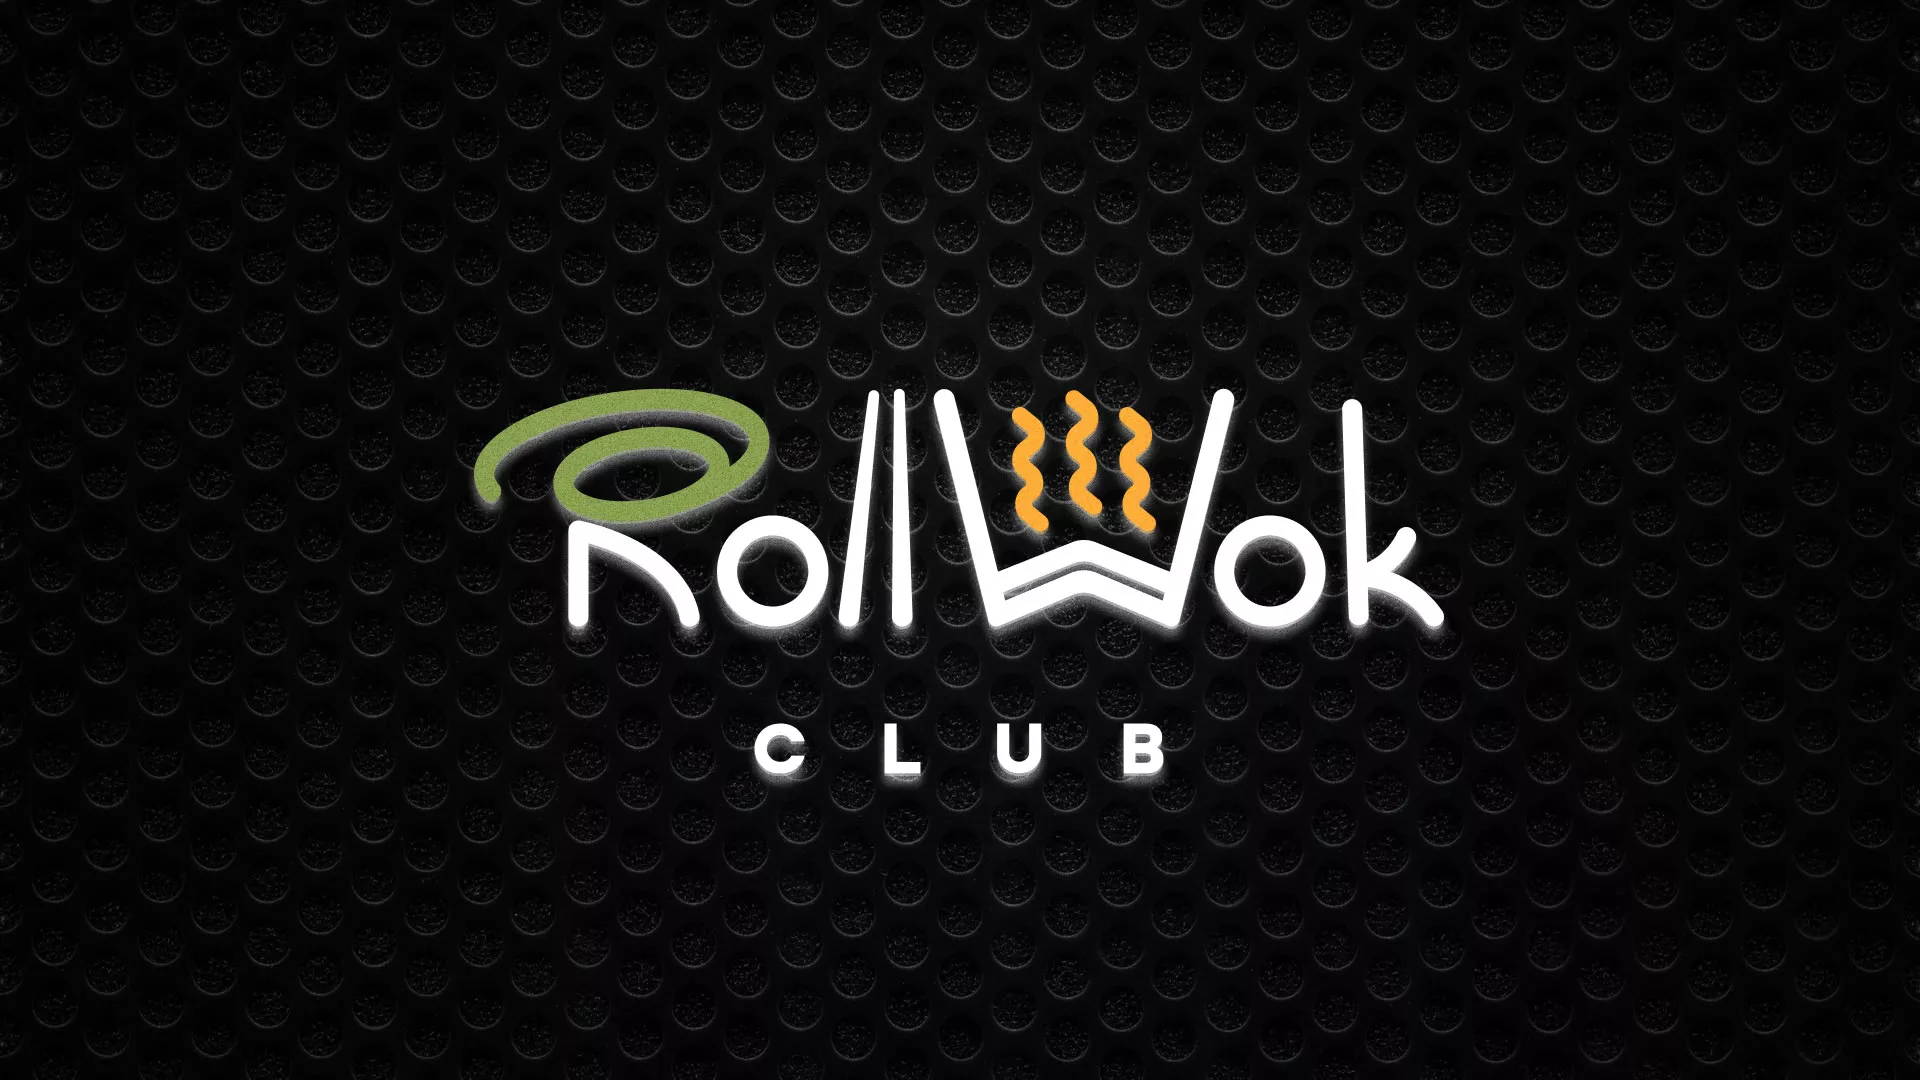 Брендирование торговых точек суши-бара «Roll Wok Club» в Островном